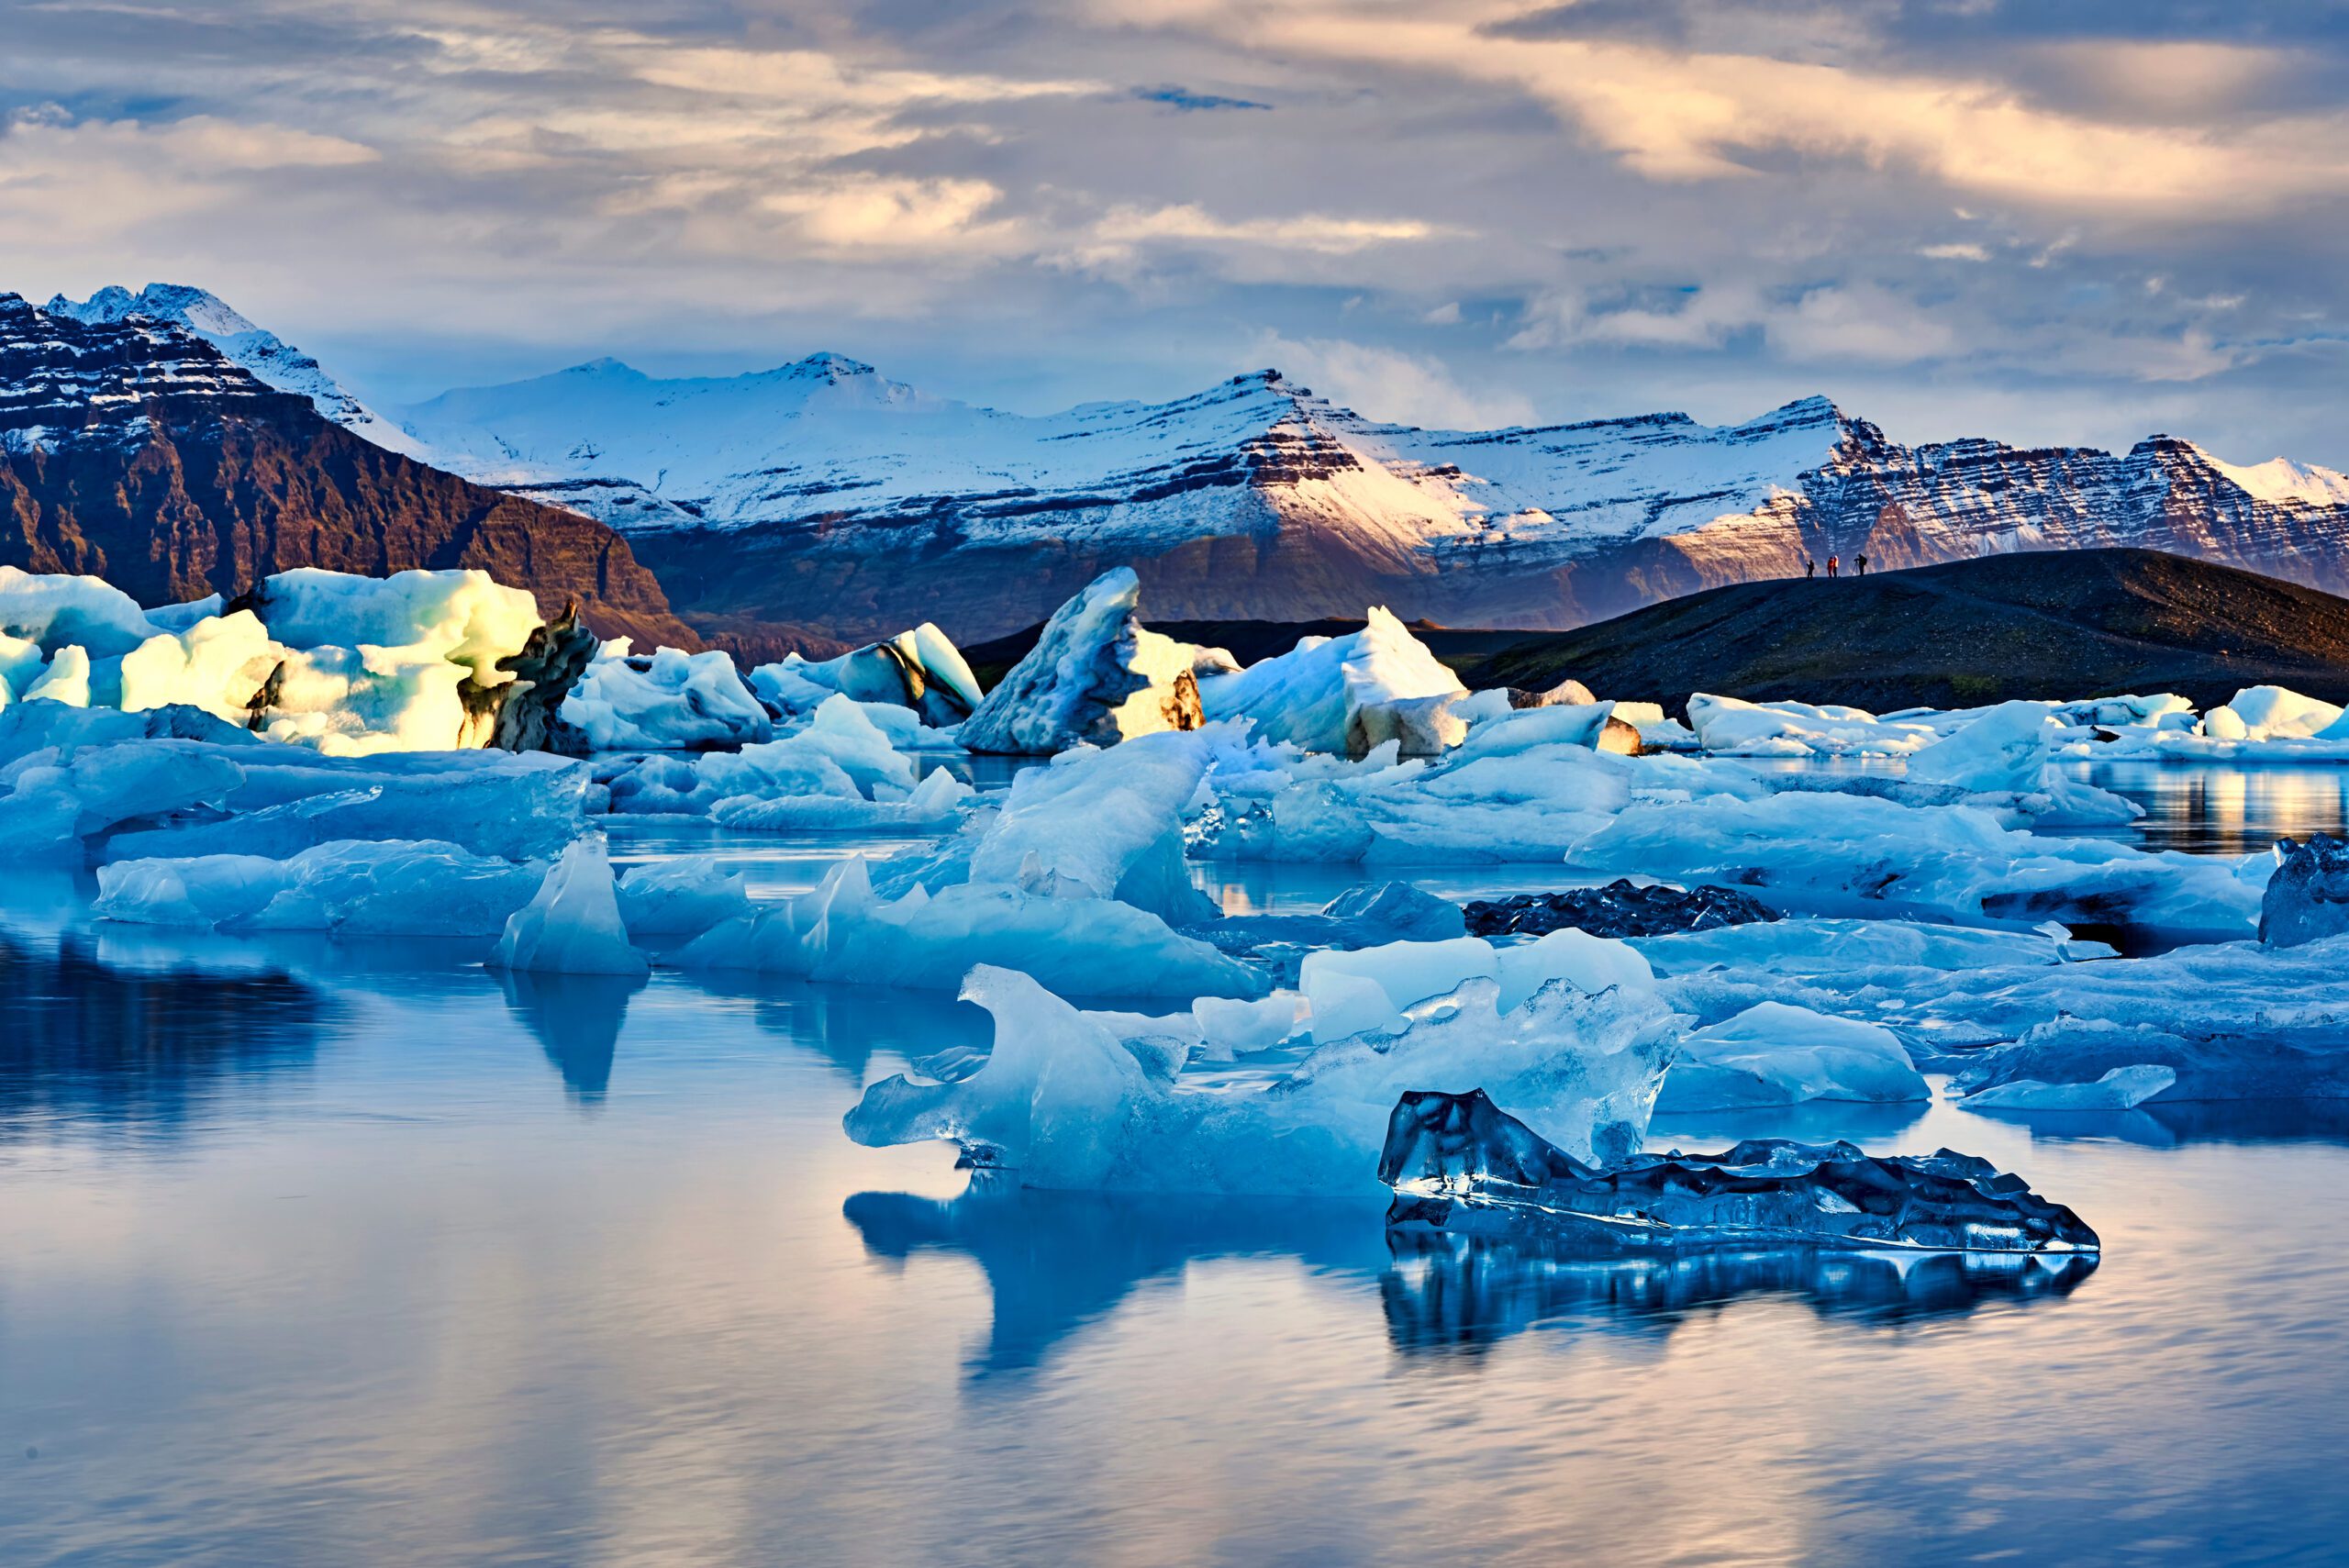 Billede af Jokulsarlon lagoon, en gletsjersø på Island, med flydende isbjerge og bjerge i baggrunden.